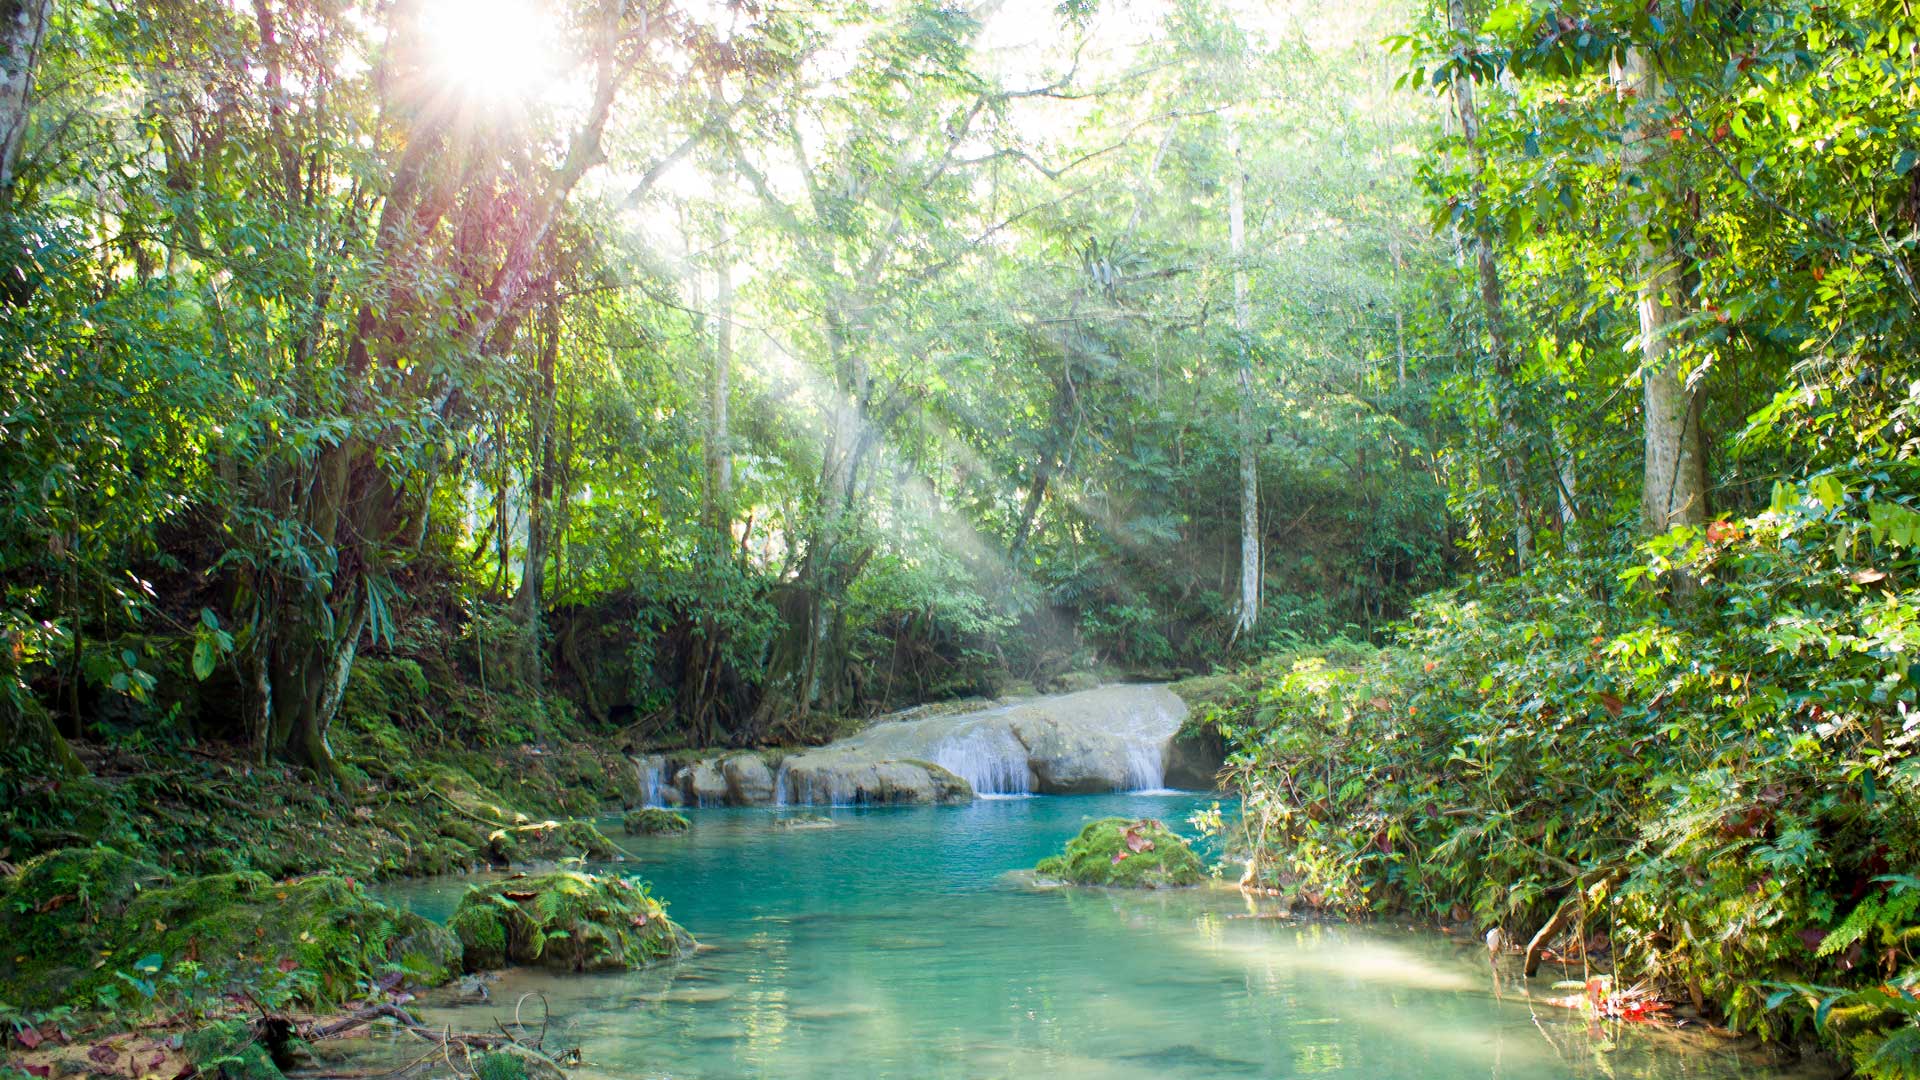 Rainforest in Jamaica